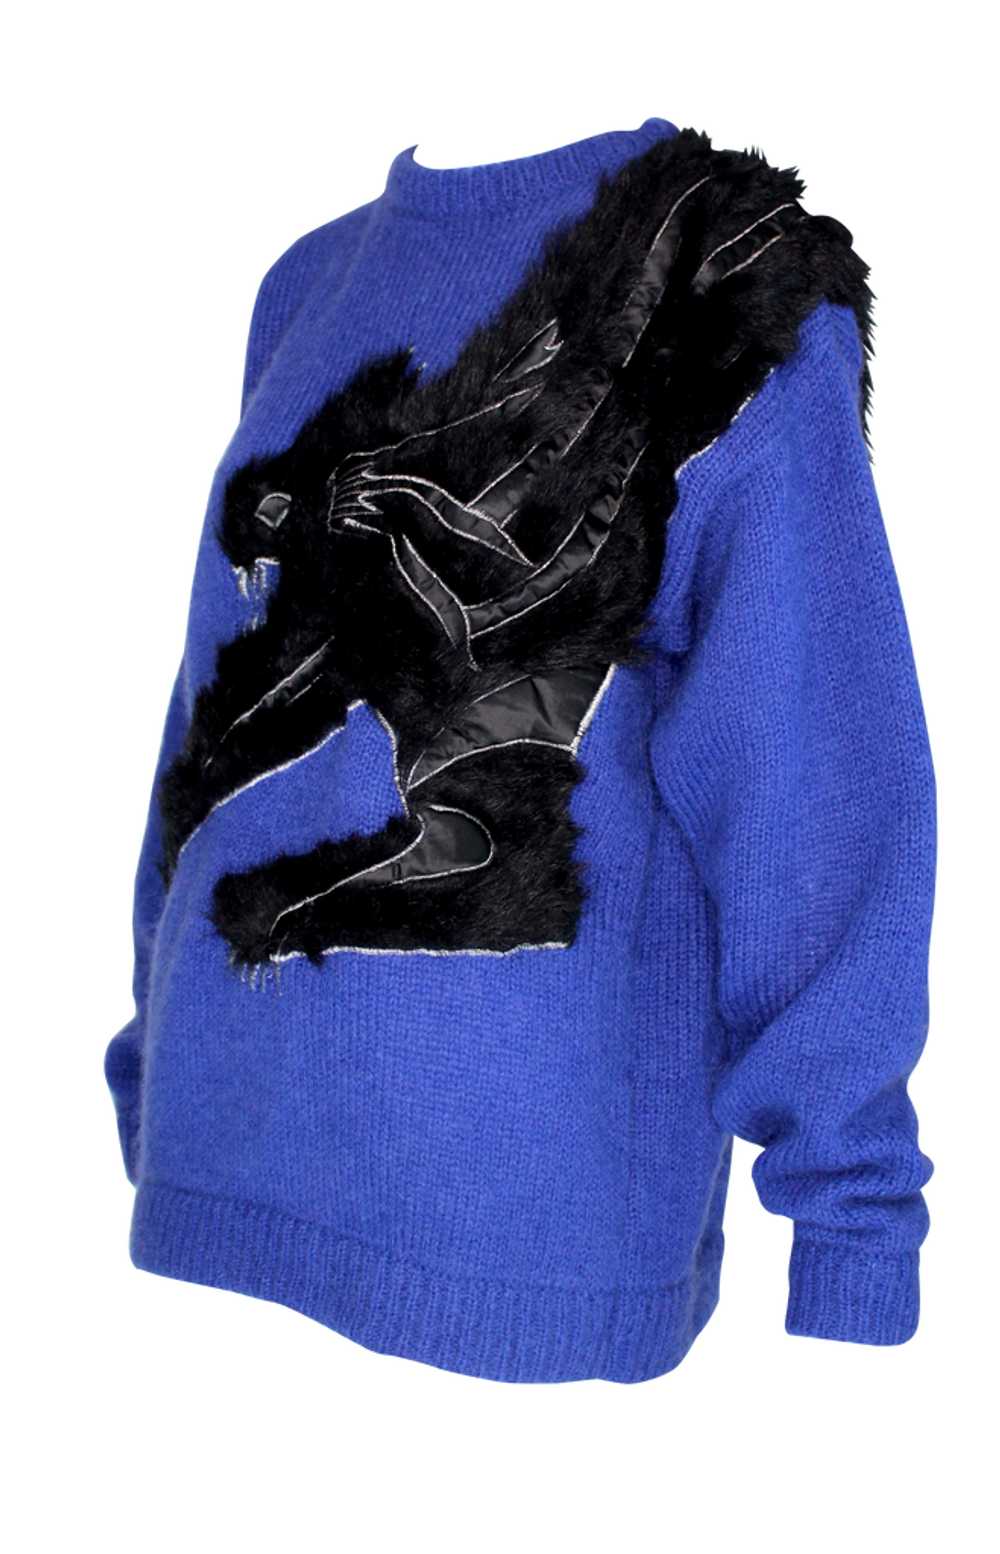 Kansai Yamamoto Cobalt Blue Knit Sweater with Bla… - image 2